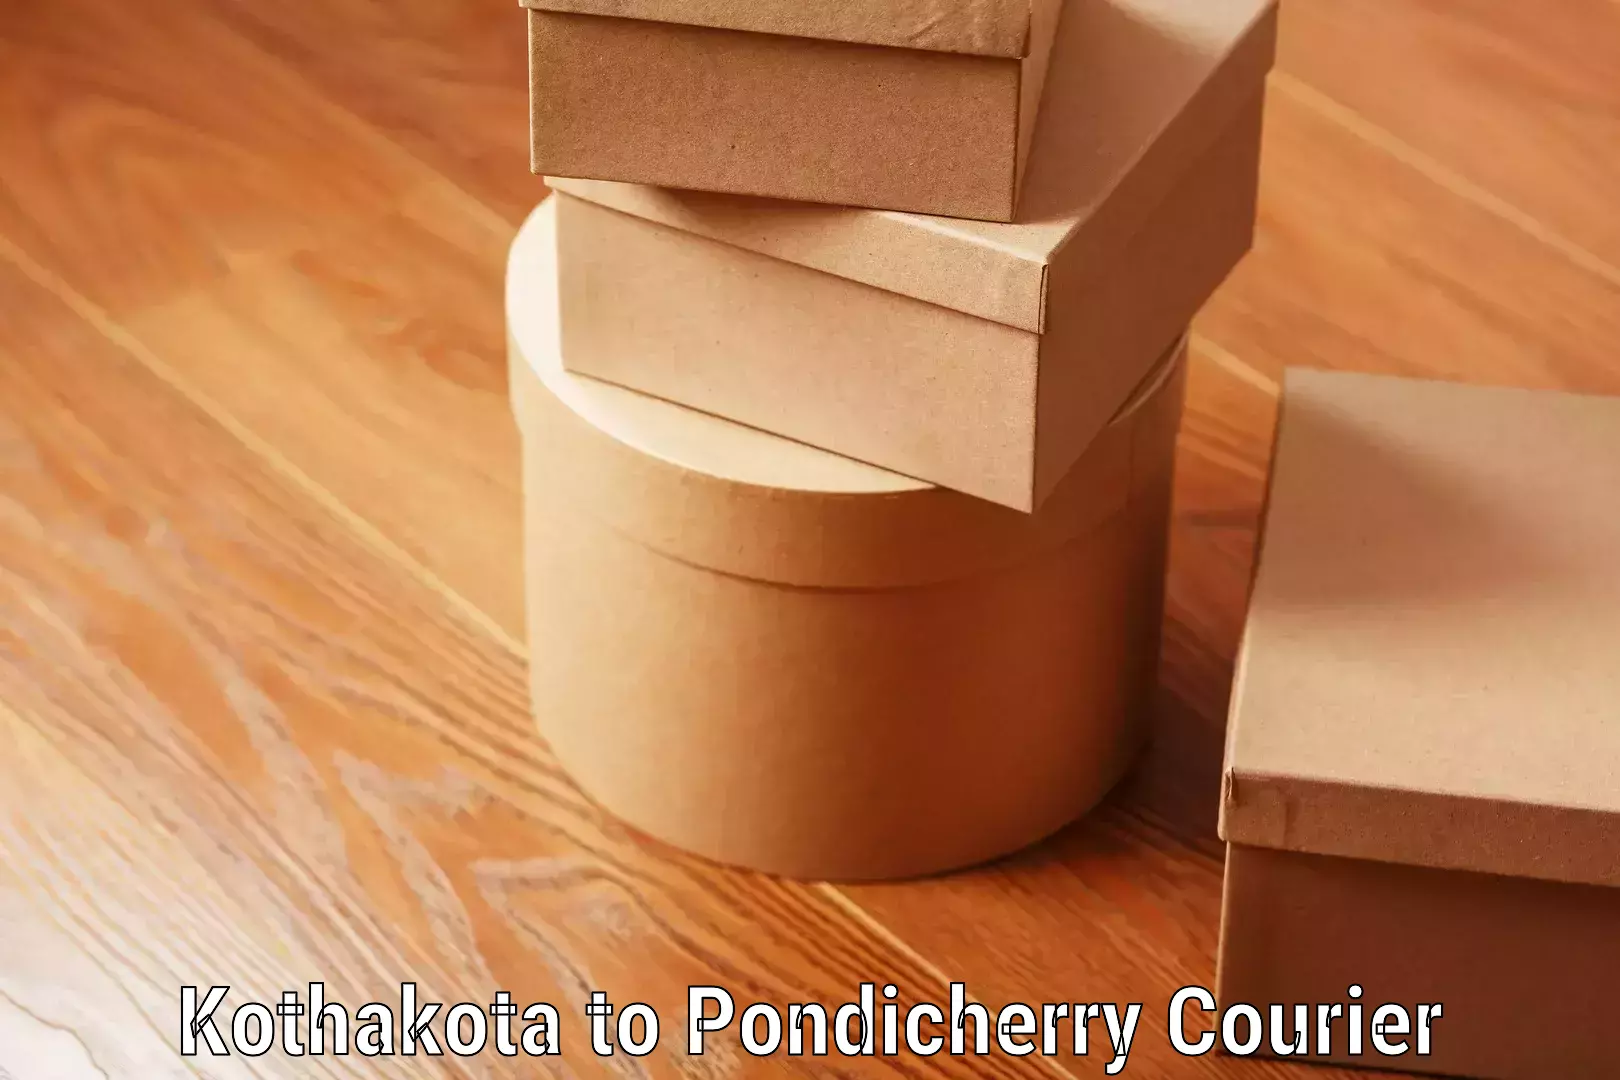 Luggage delivery estimate Kothakota to Pondicherry